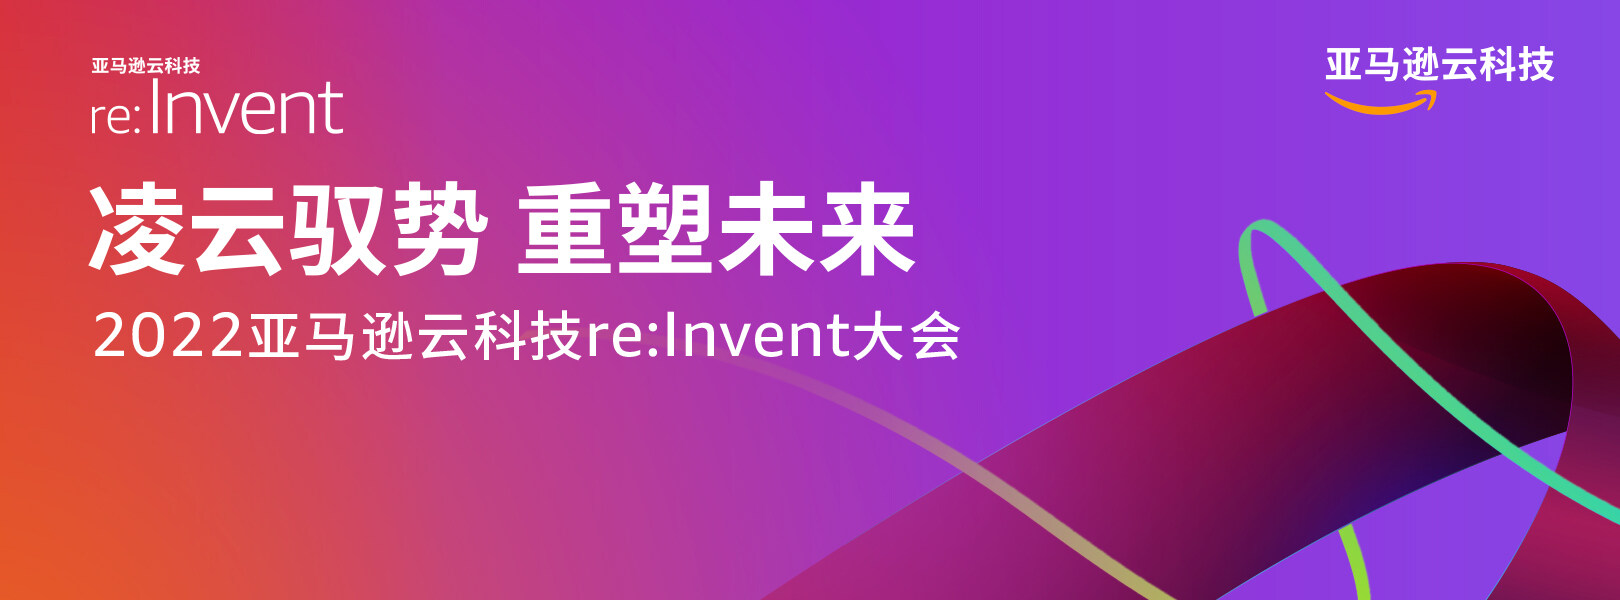 2022 re:Invent InfoQ 特别报道